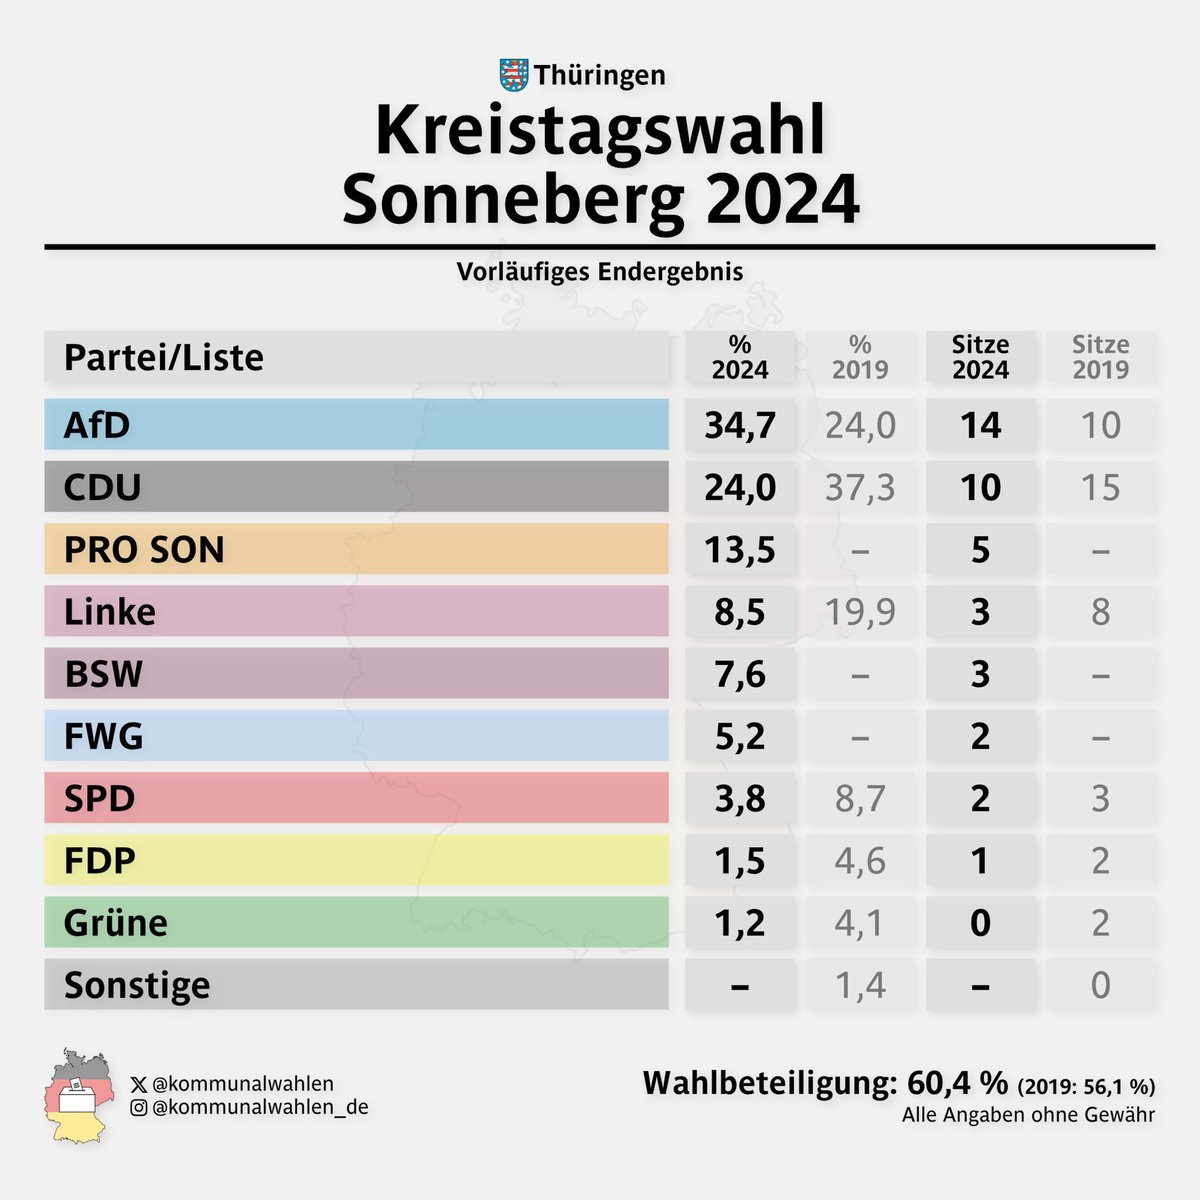 📊 Lkr. #Sonneberg | Kreistagswahl 2024 | Vorläufiges Endergebnis

🔵 AfD: 34,7 %
⚫️ CDU: 24,0 %
👥 PRO SON: 13,5 %
...

#Thüringen #Kommunalwahlen